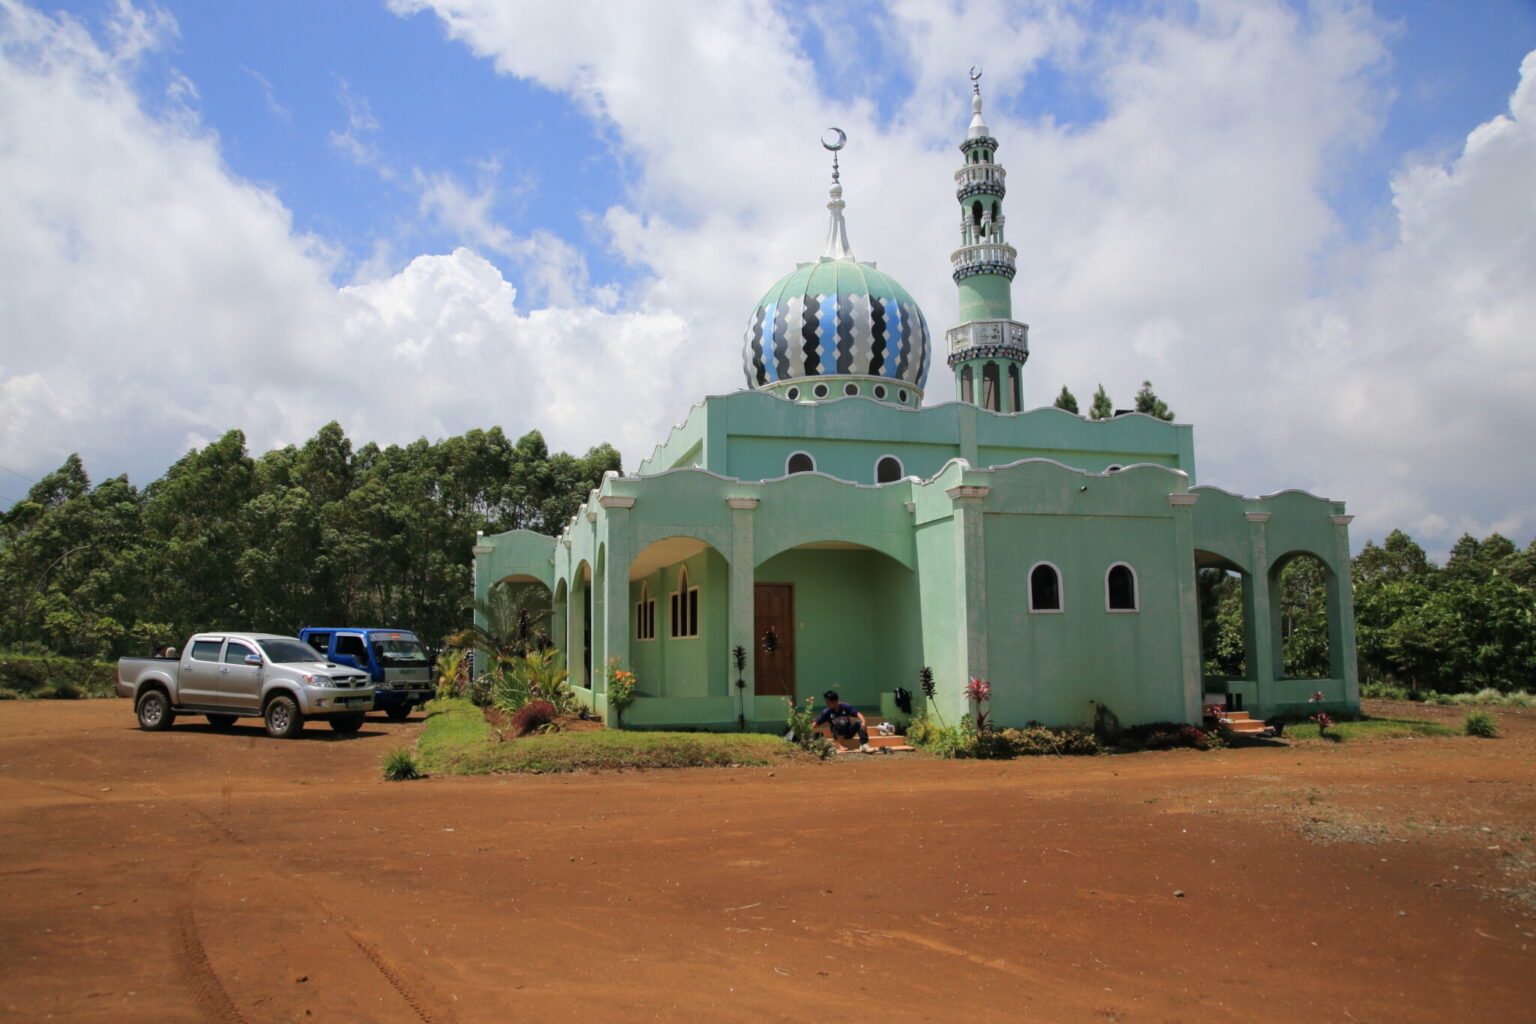 農園内に併設されたイスラム教のモスク。